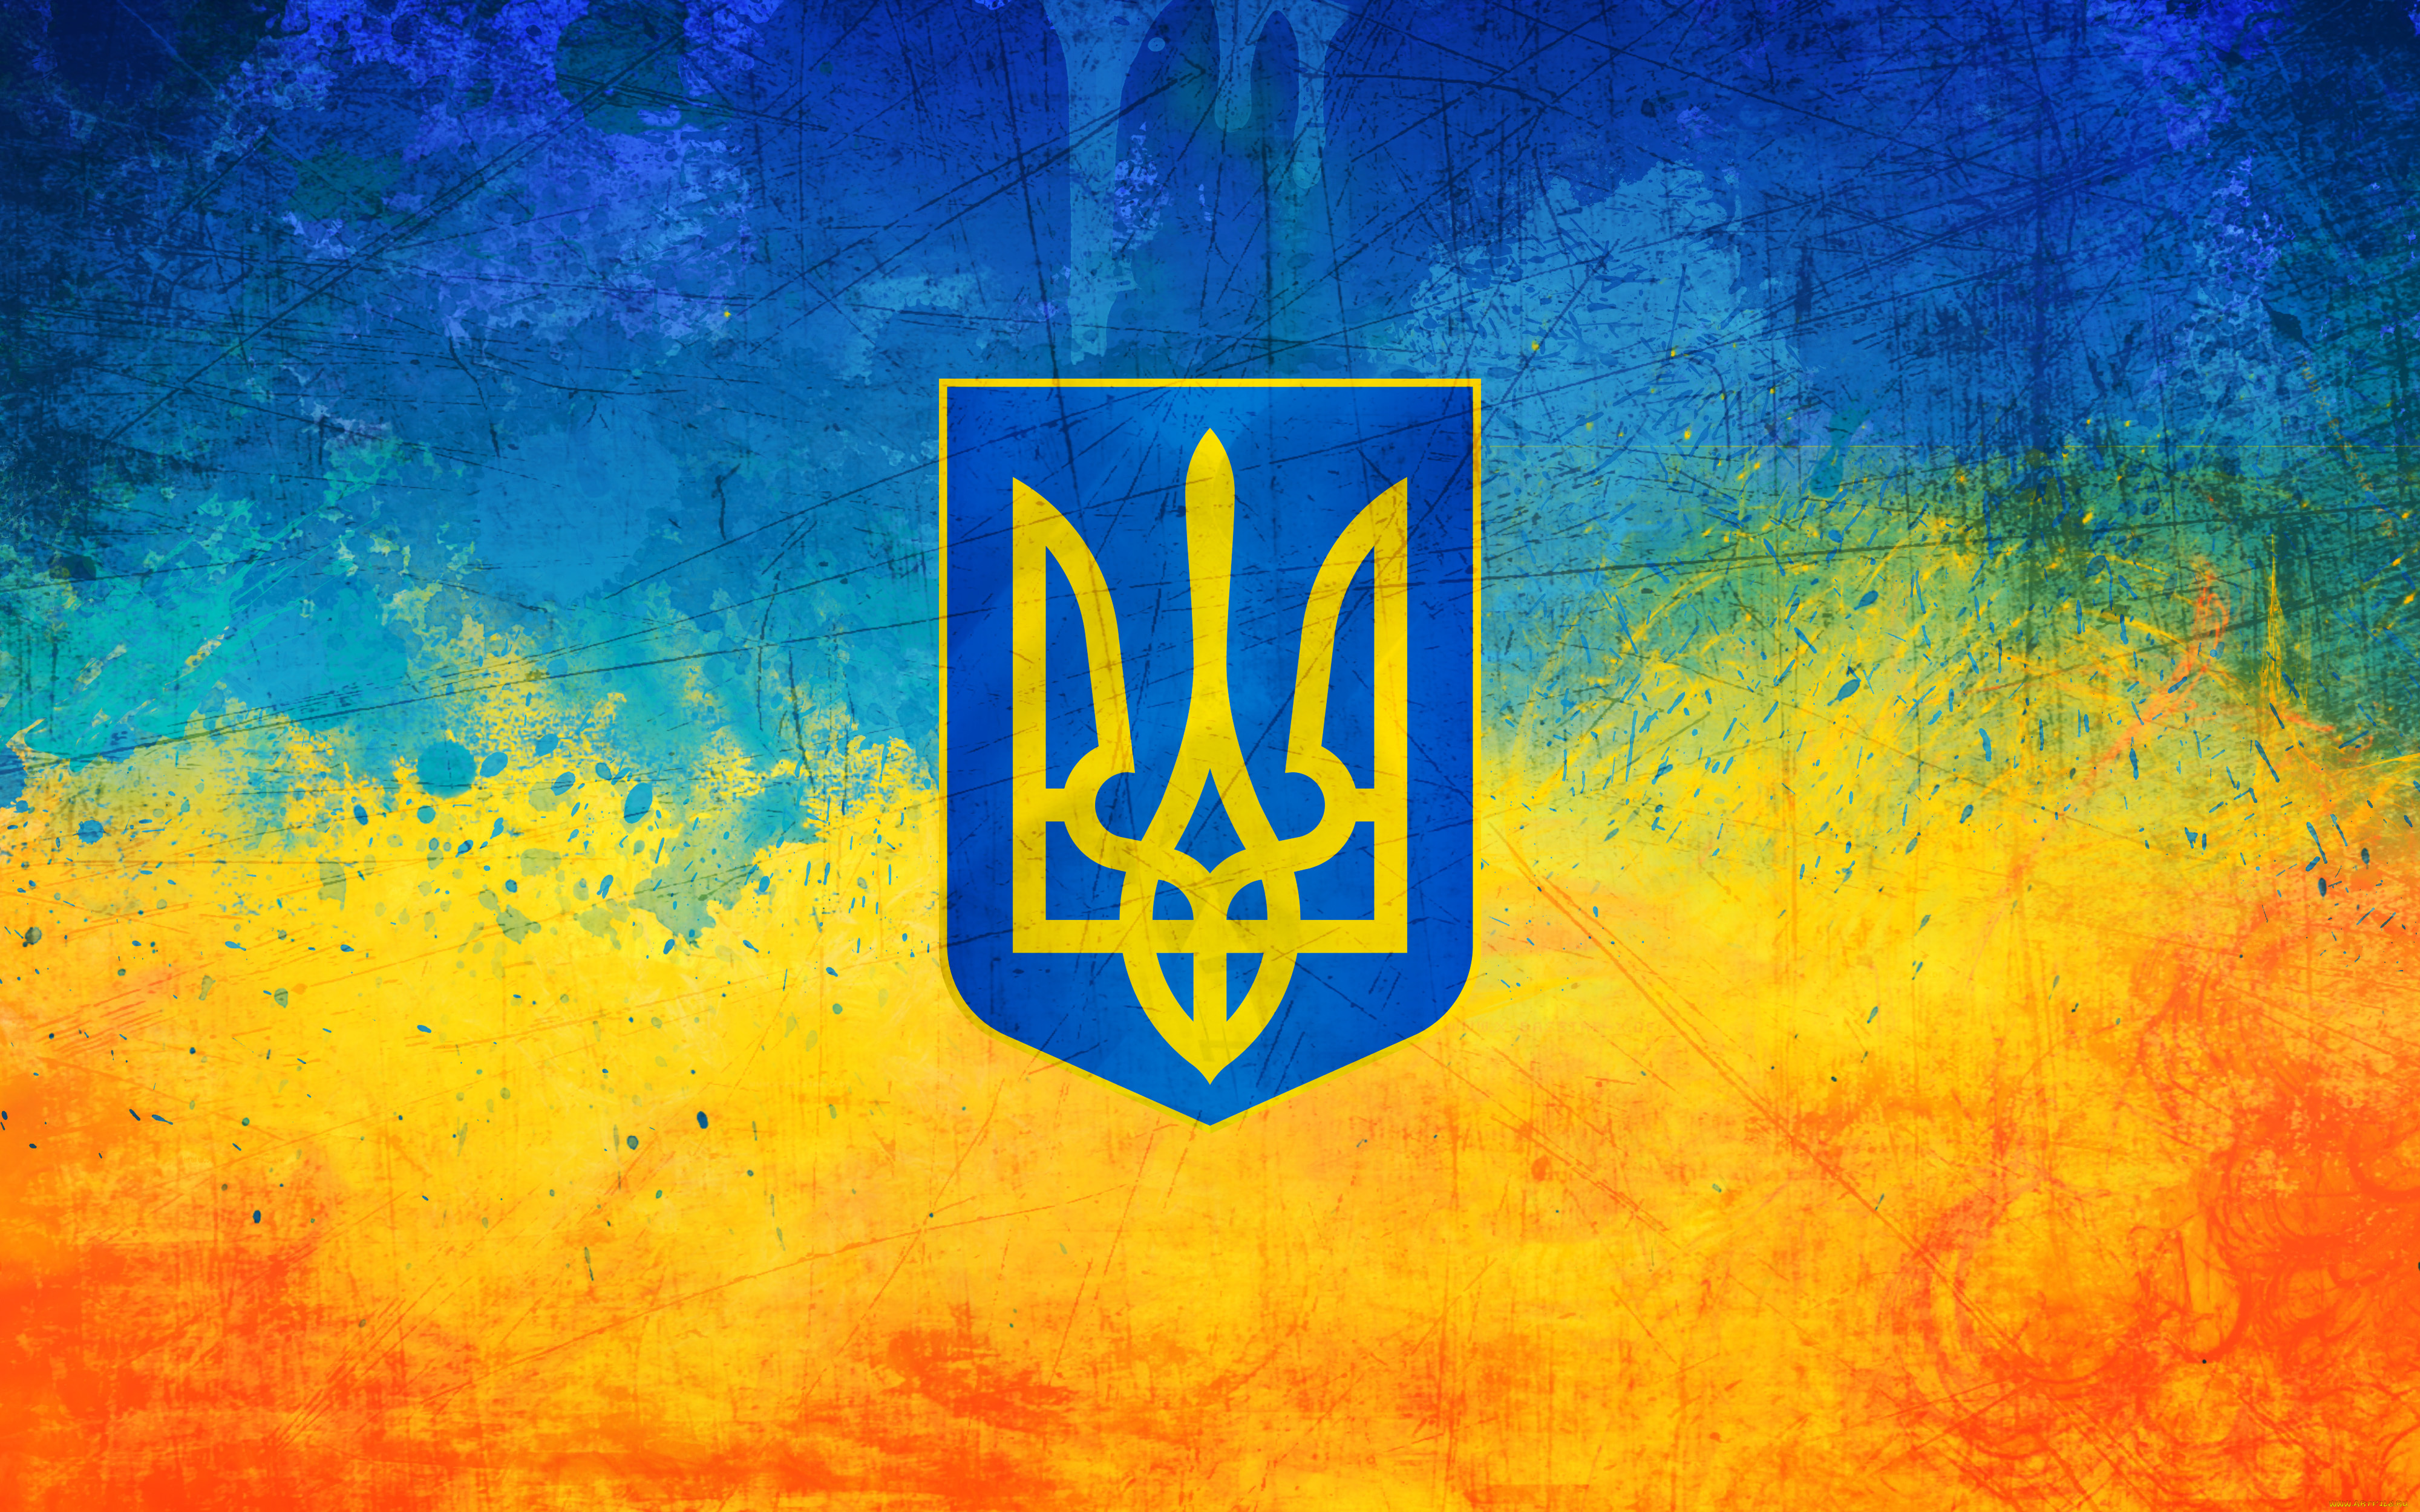 разное, граффити, флаг, герб, тризуб, желтый, голубой, украина